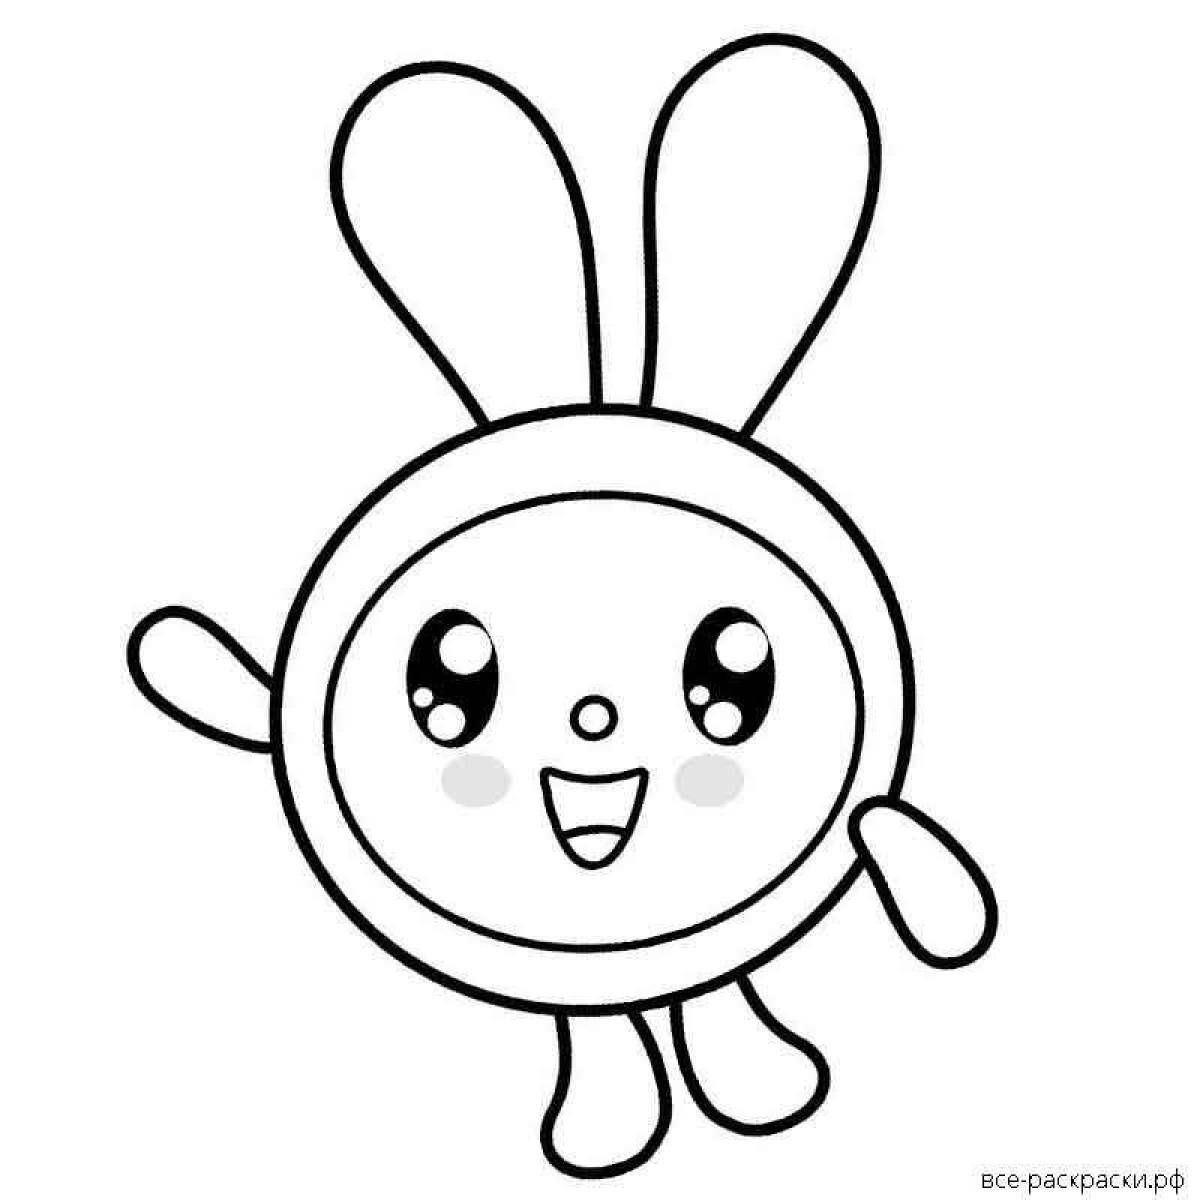 Coloring book sunny bunnies все открыто. Зайчик раскраска для детей. Солнечный звйчики раскраска. Солнечные зайчики раскраска. Раскраска Малышарики.